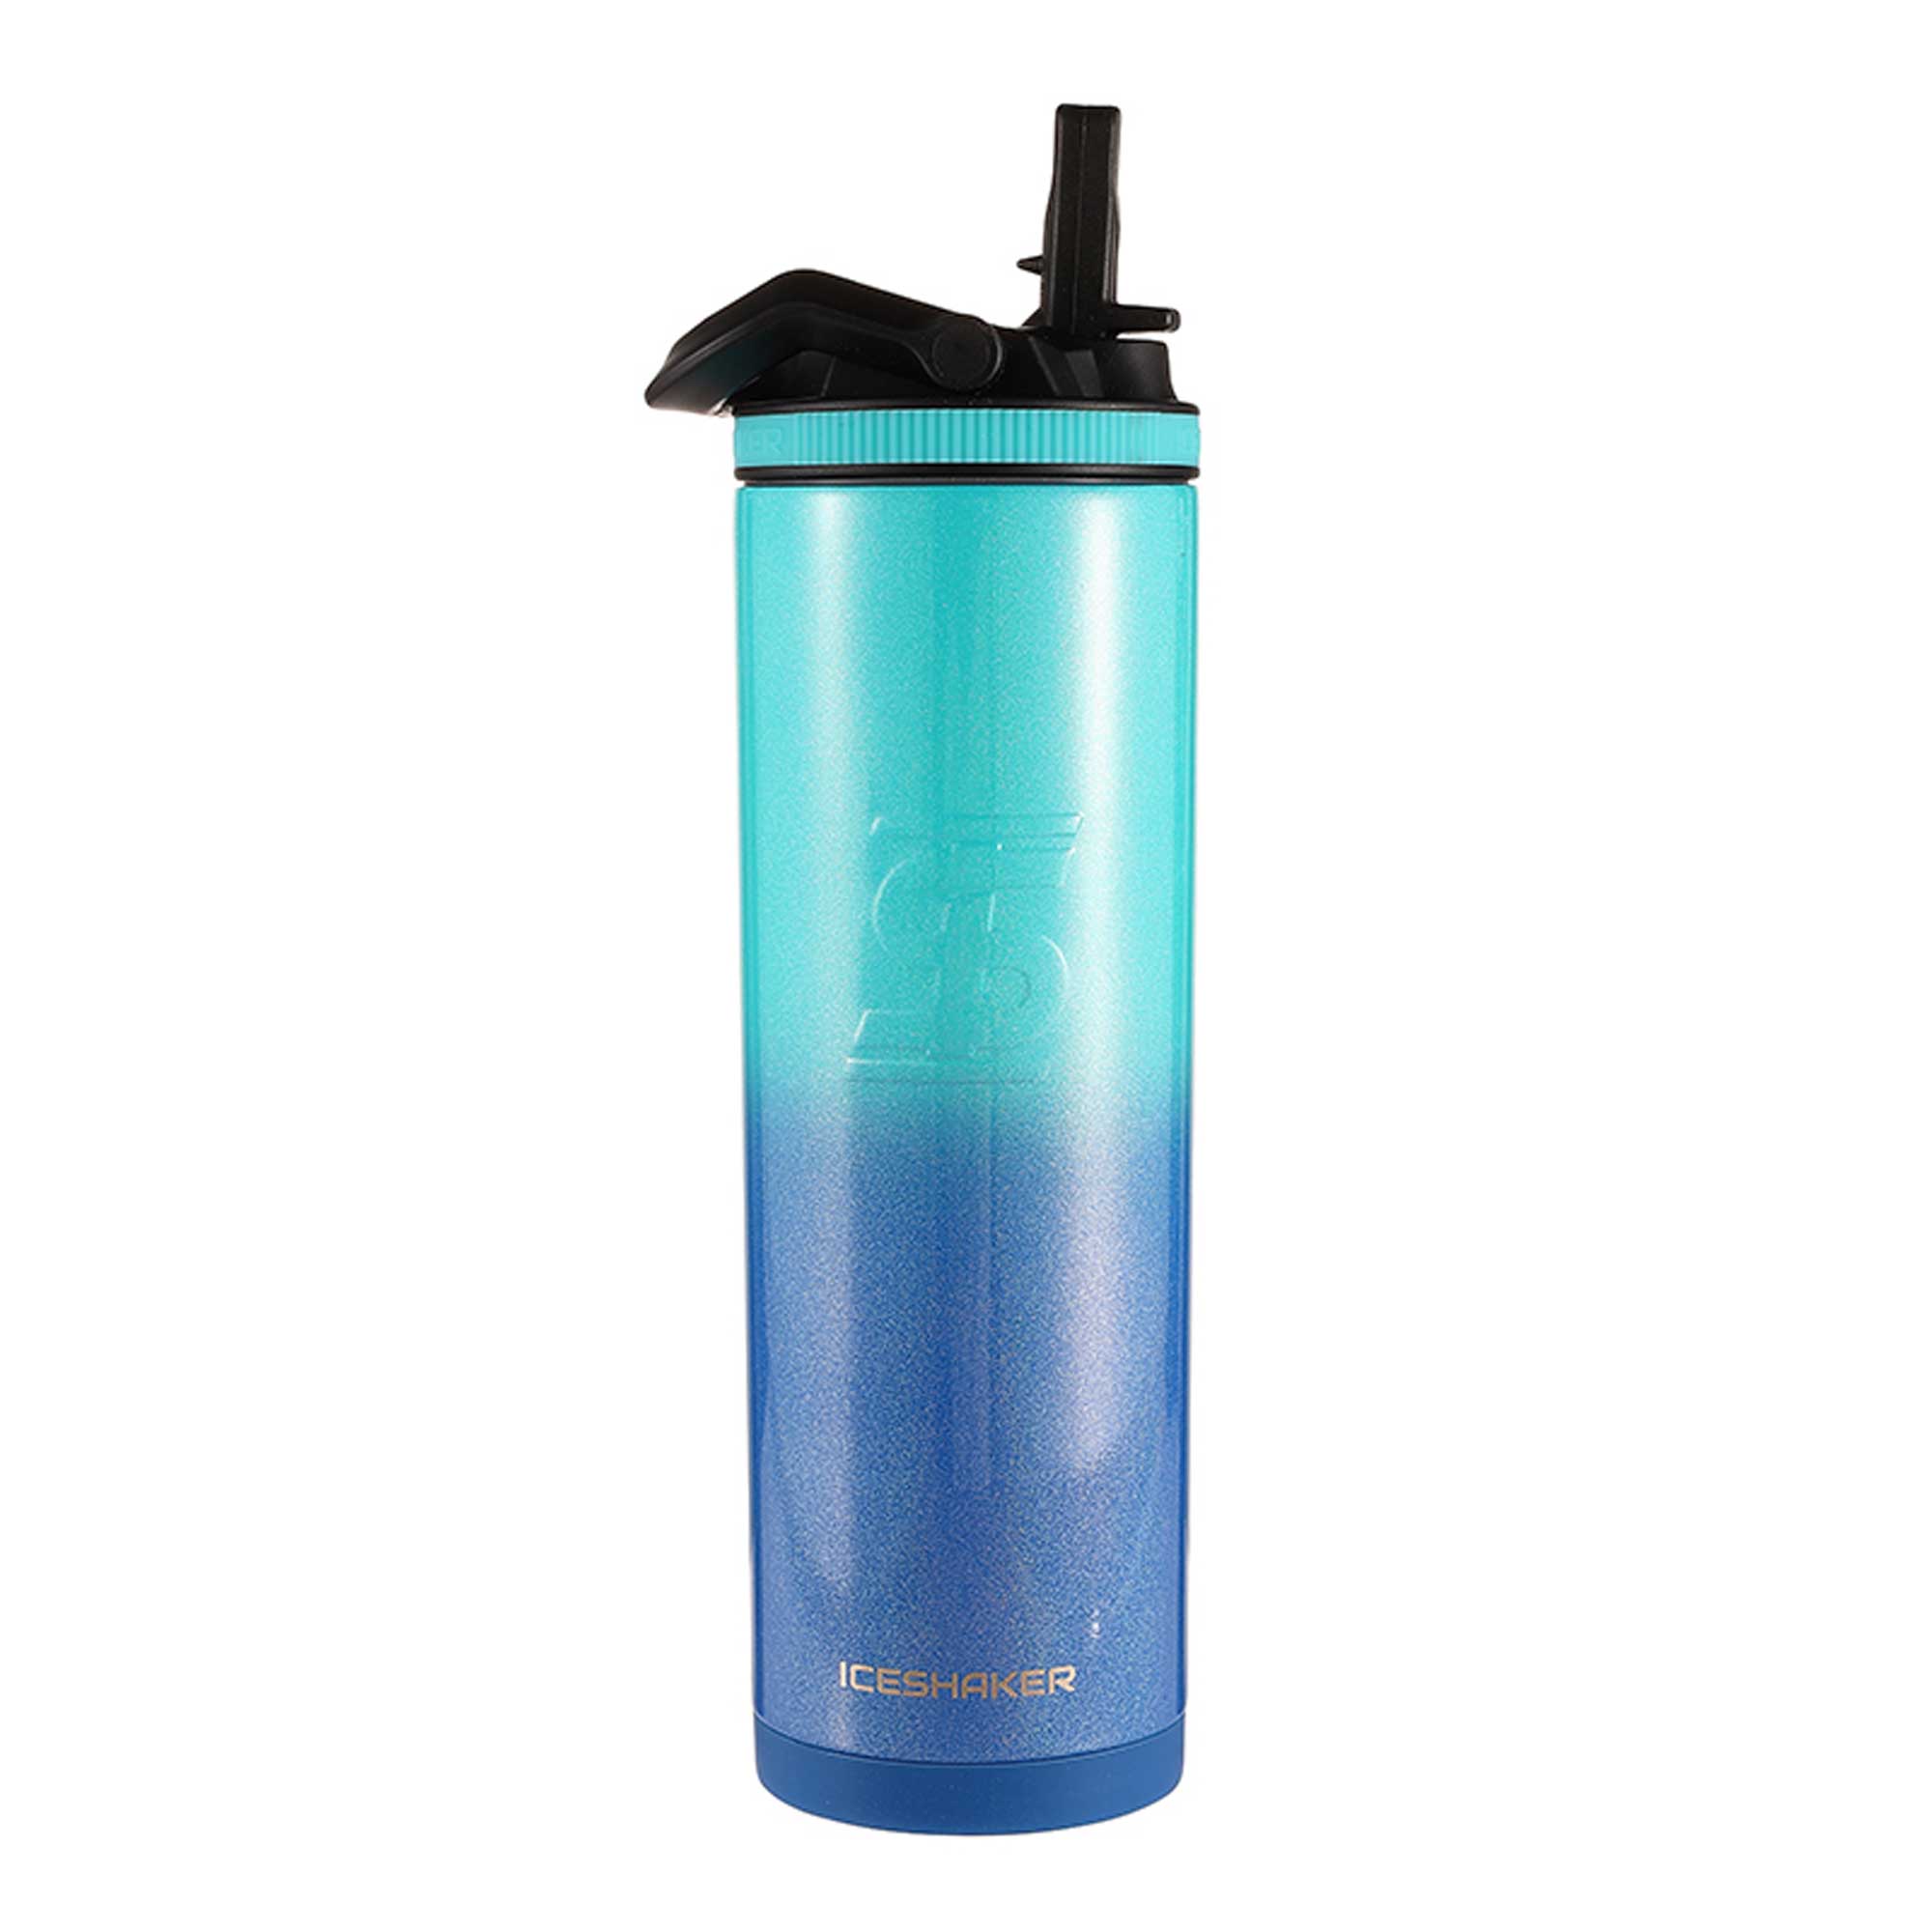 TAL Stainless Steel Ranger Water Bottle 40 fl oz, Purple